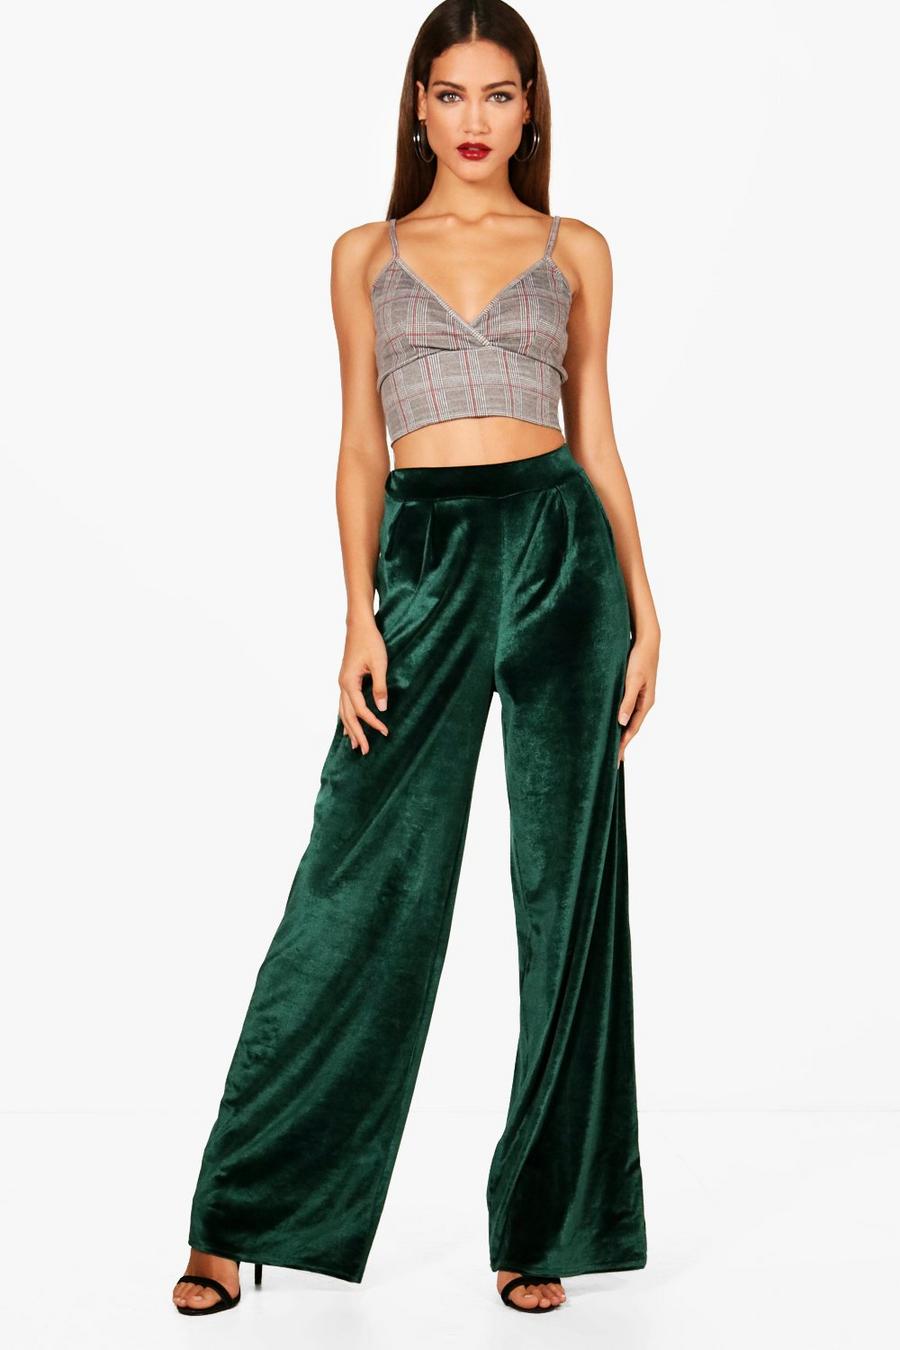 https://media.boohoo.com/i/boohoo/tzz98246_emerald_xl/female-emerald-tall-wide-leg-velvet-pants/?w=900&qlt=default&fmt.jp2.qlt=70&fmt=auto&sm=fit